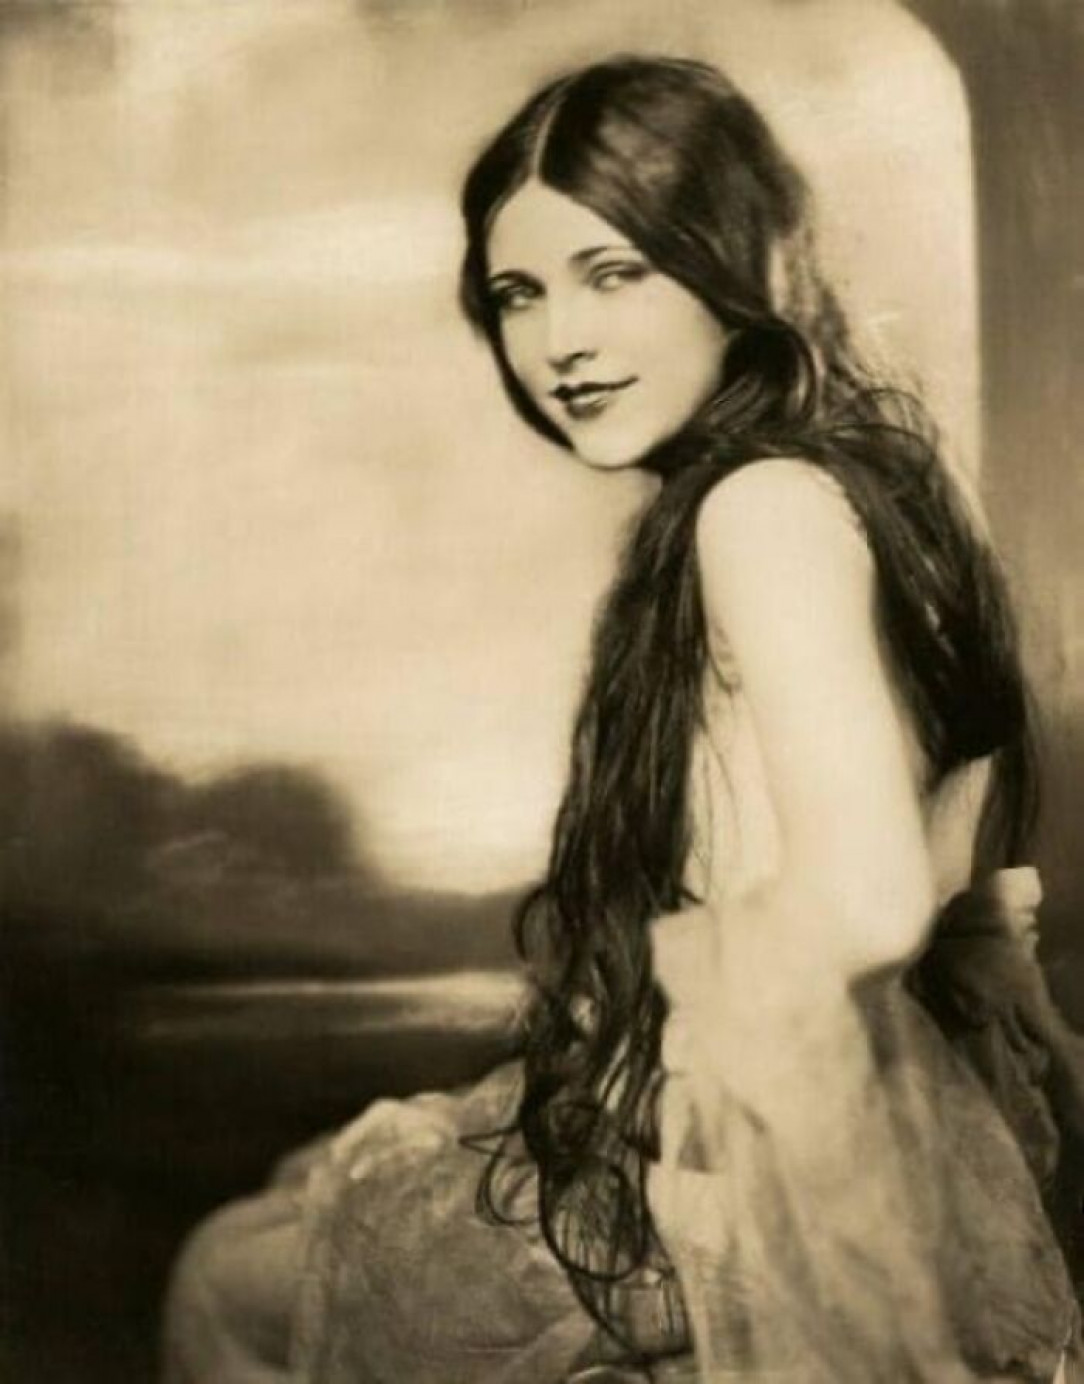 famed beauty, Lotta Cheek perhaps in 1925